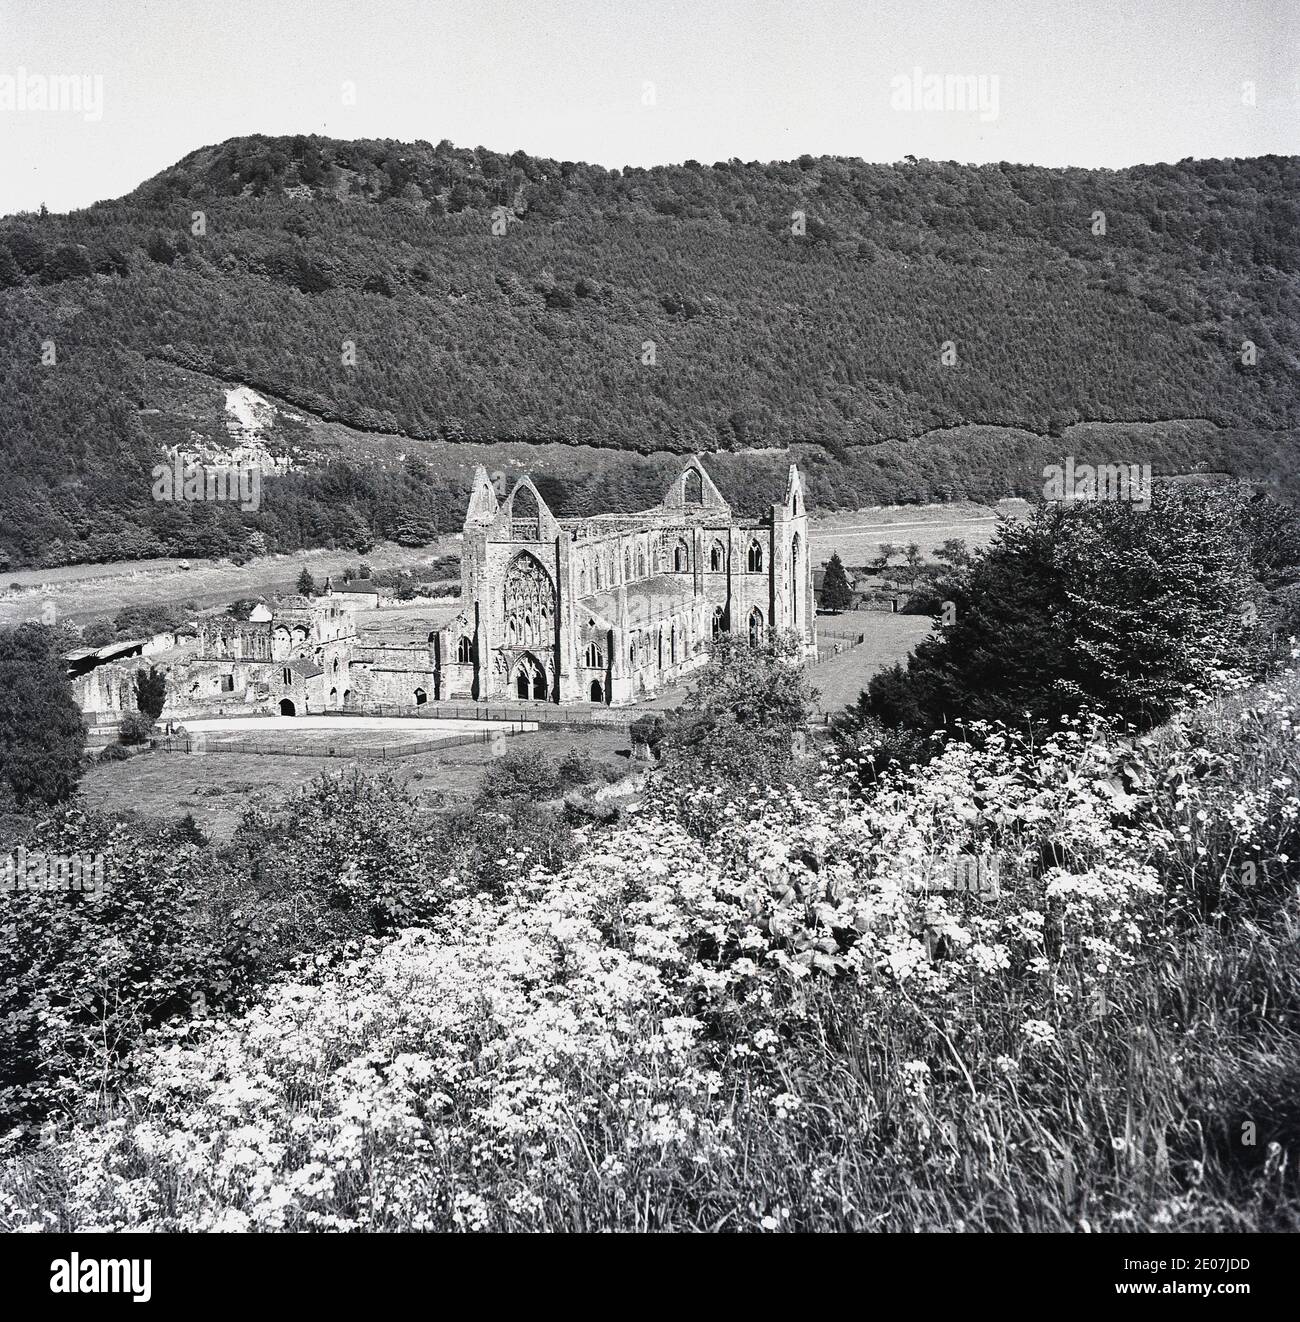 1950, storico, un quadro di J Allan Cash dell'Abbazia di Tintern. L'abbazia cistercense, fondata nel 1131 da Walter de Clare, signore di Chepstow, si trova adiacente al villaggio di Tintern nel Monmouthshire al confine con il Galles ed è una delle più grandi rovine monastiche del Galles. Foto Stock